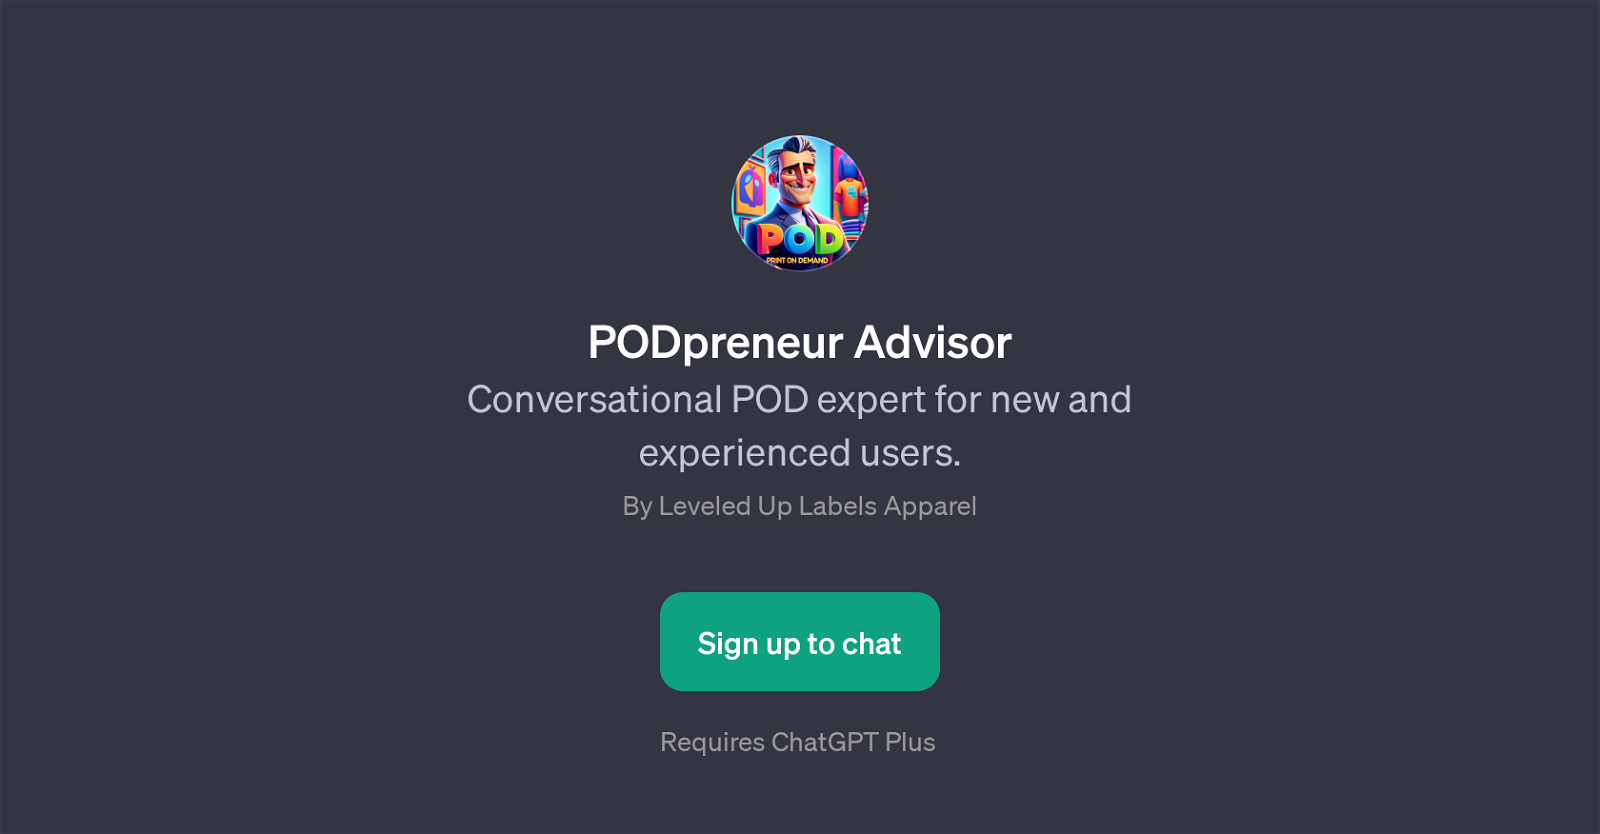 PODpreneur Advisor website